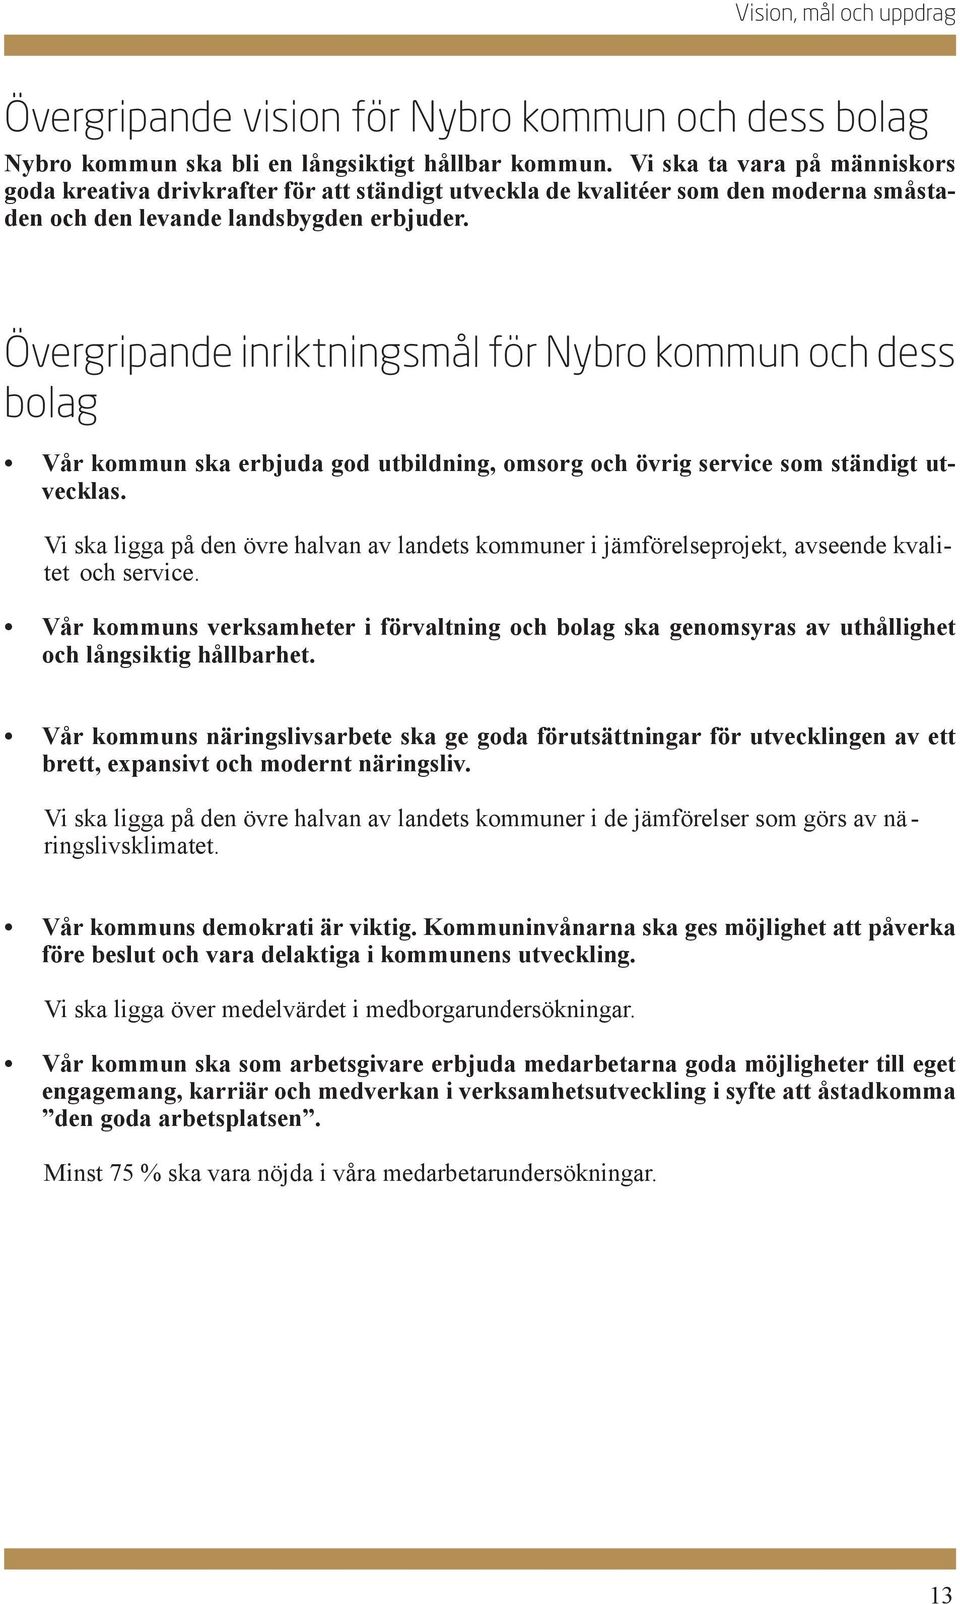 Övergripande inriktningsmål för Nybro kommun och dess bolag Vår kommun ska erbjuda god utbildning, omsorg och övrig service som ständigt utvecklas.